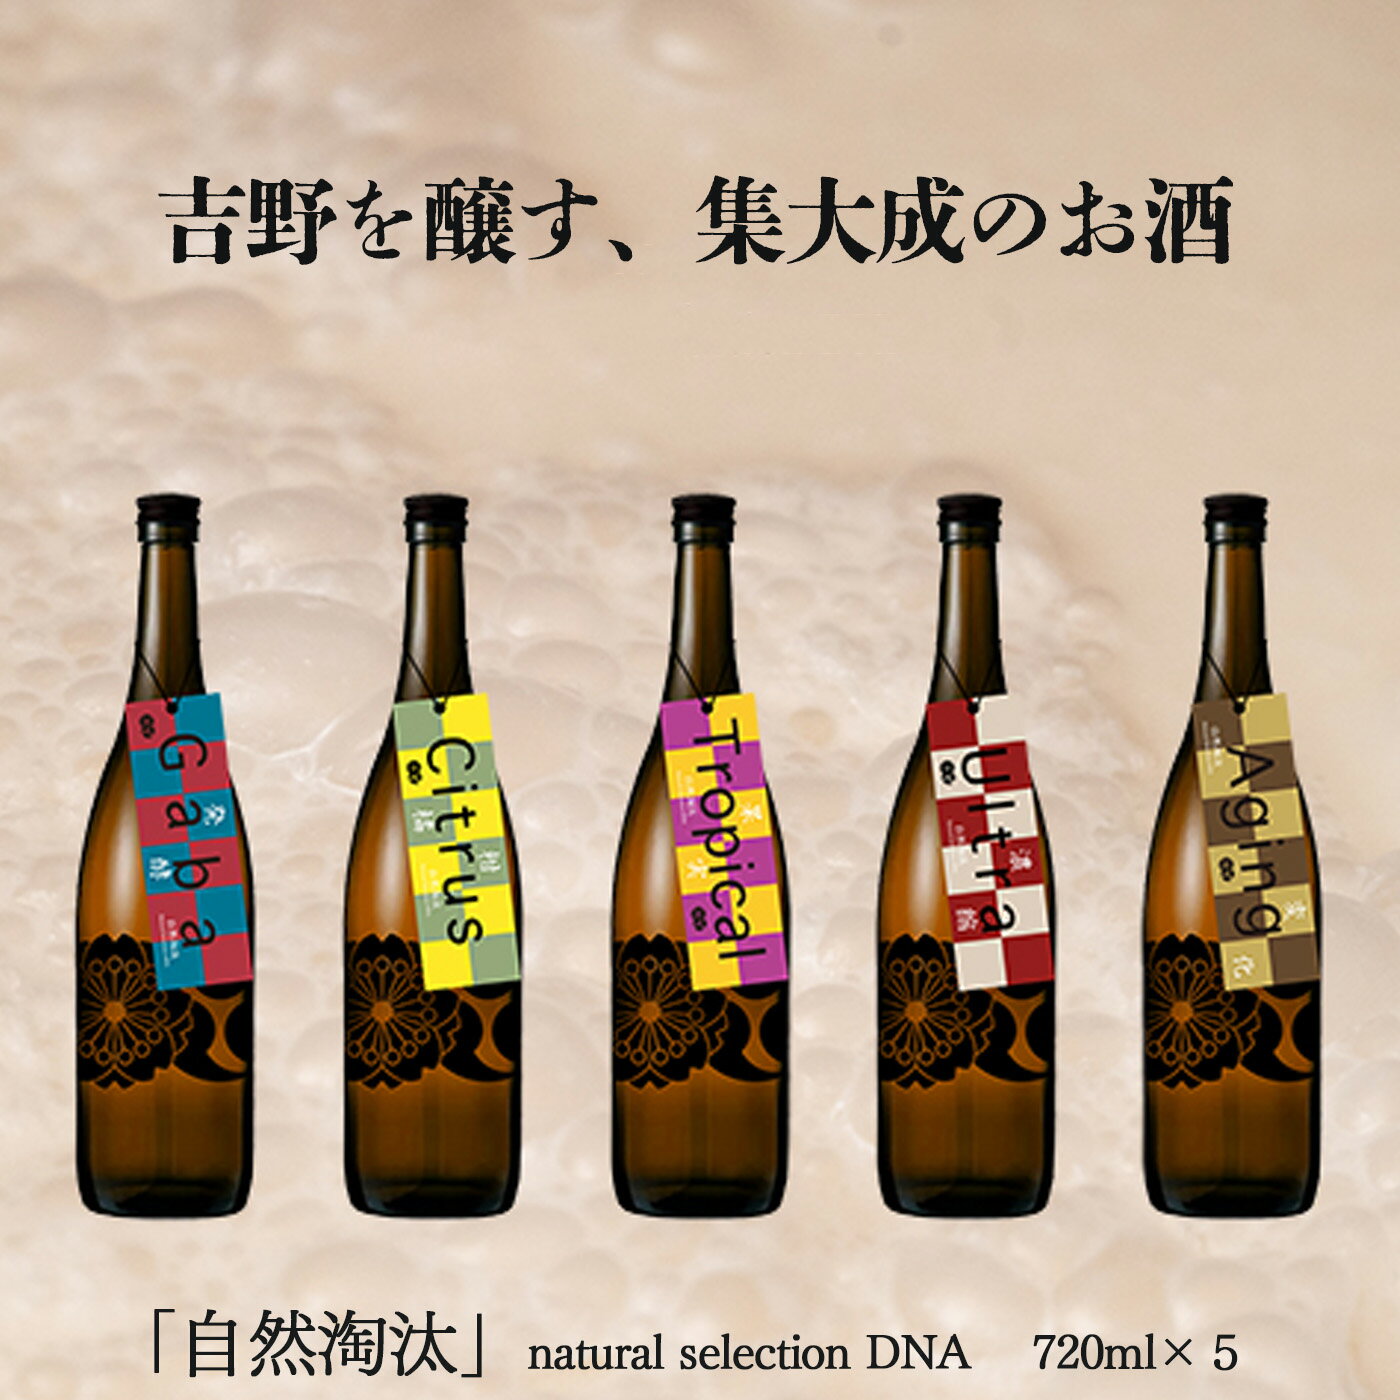 自然淘汰 natural selection DNA 5種セット 日本酒 酒 美吉野酒造 奈良県 吉野町